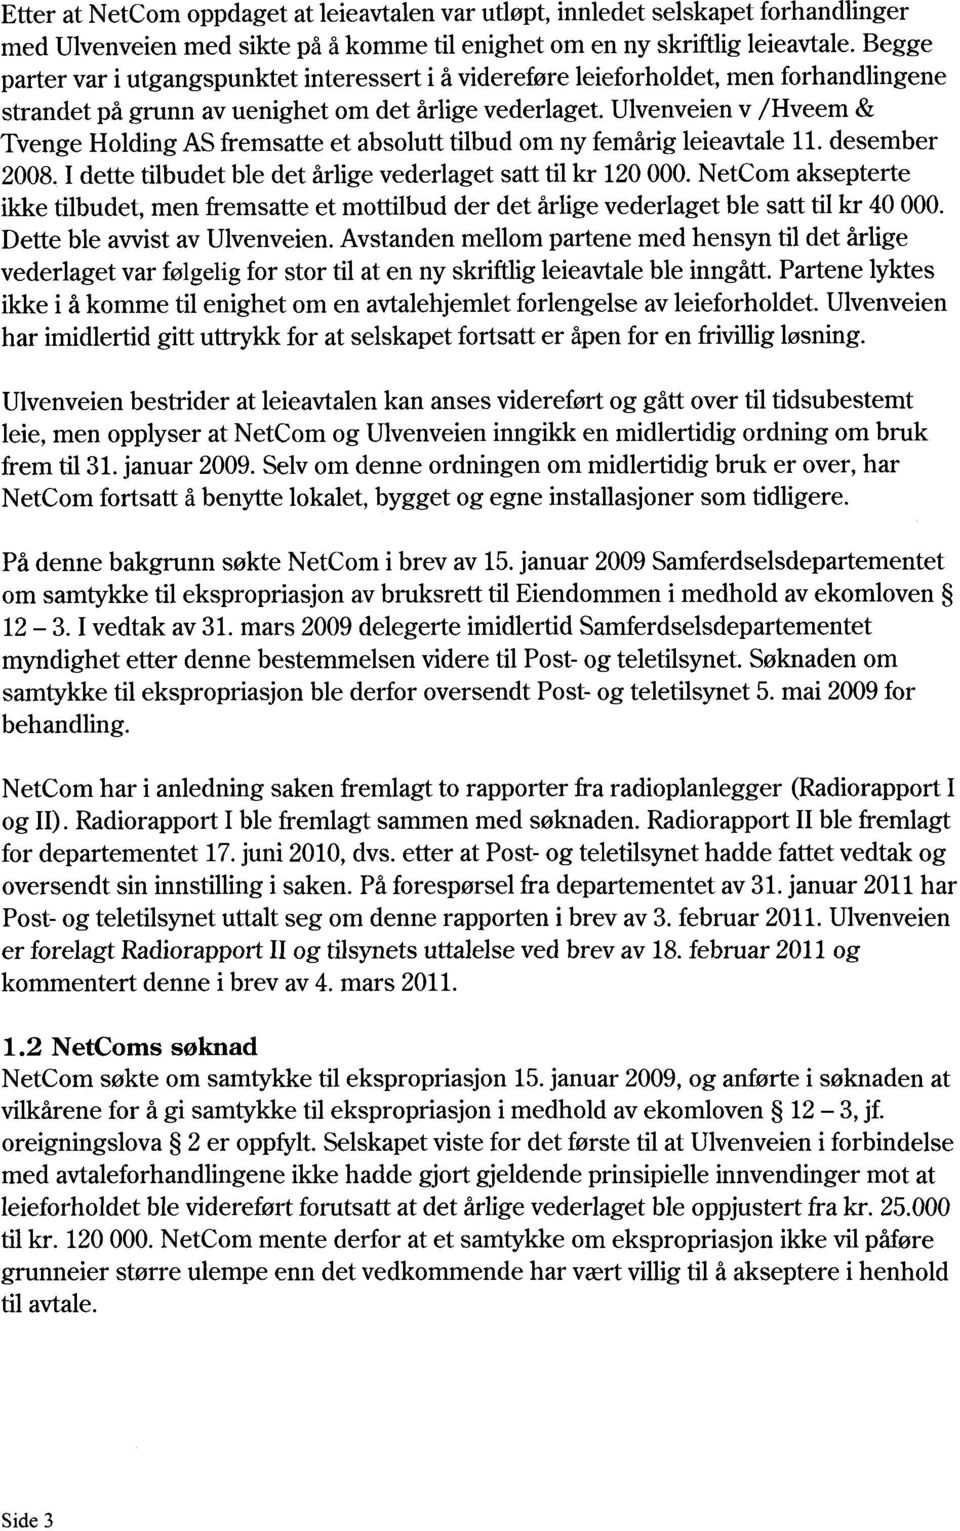 Ulvenveien v /Hveem & Tvenge Holding AS fremsatte et absolutt tilbud om ny femårig leieavtale 11. desember 2008. I dette tilbudet ble det årlige vederlaget satt til kr 120 000.